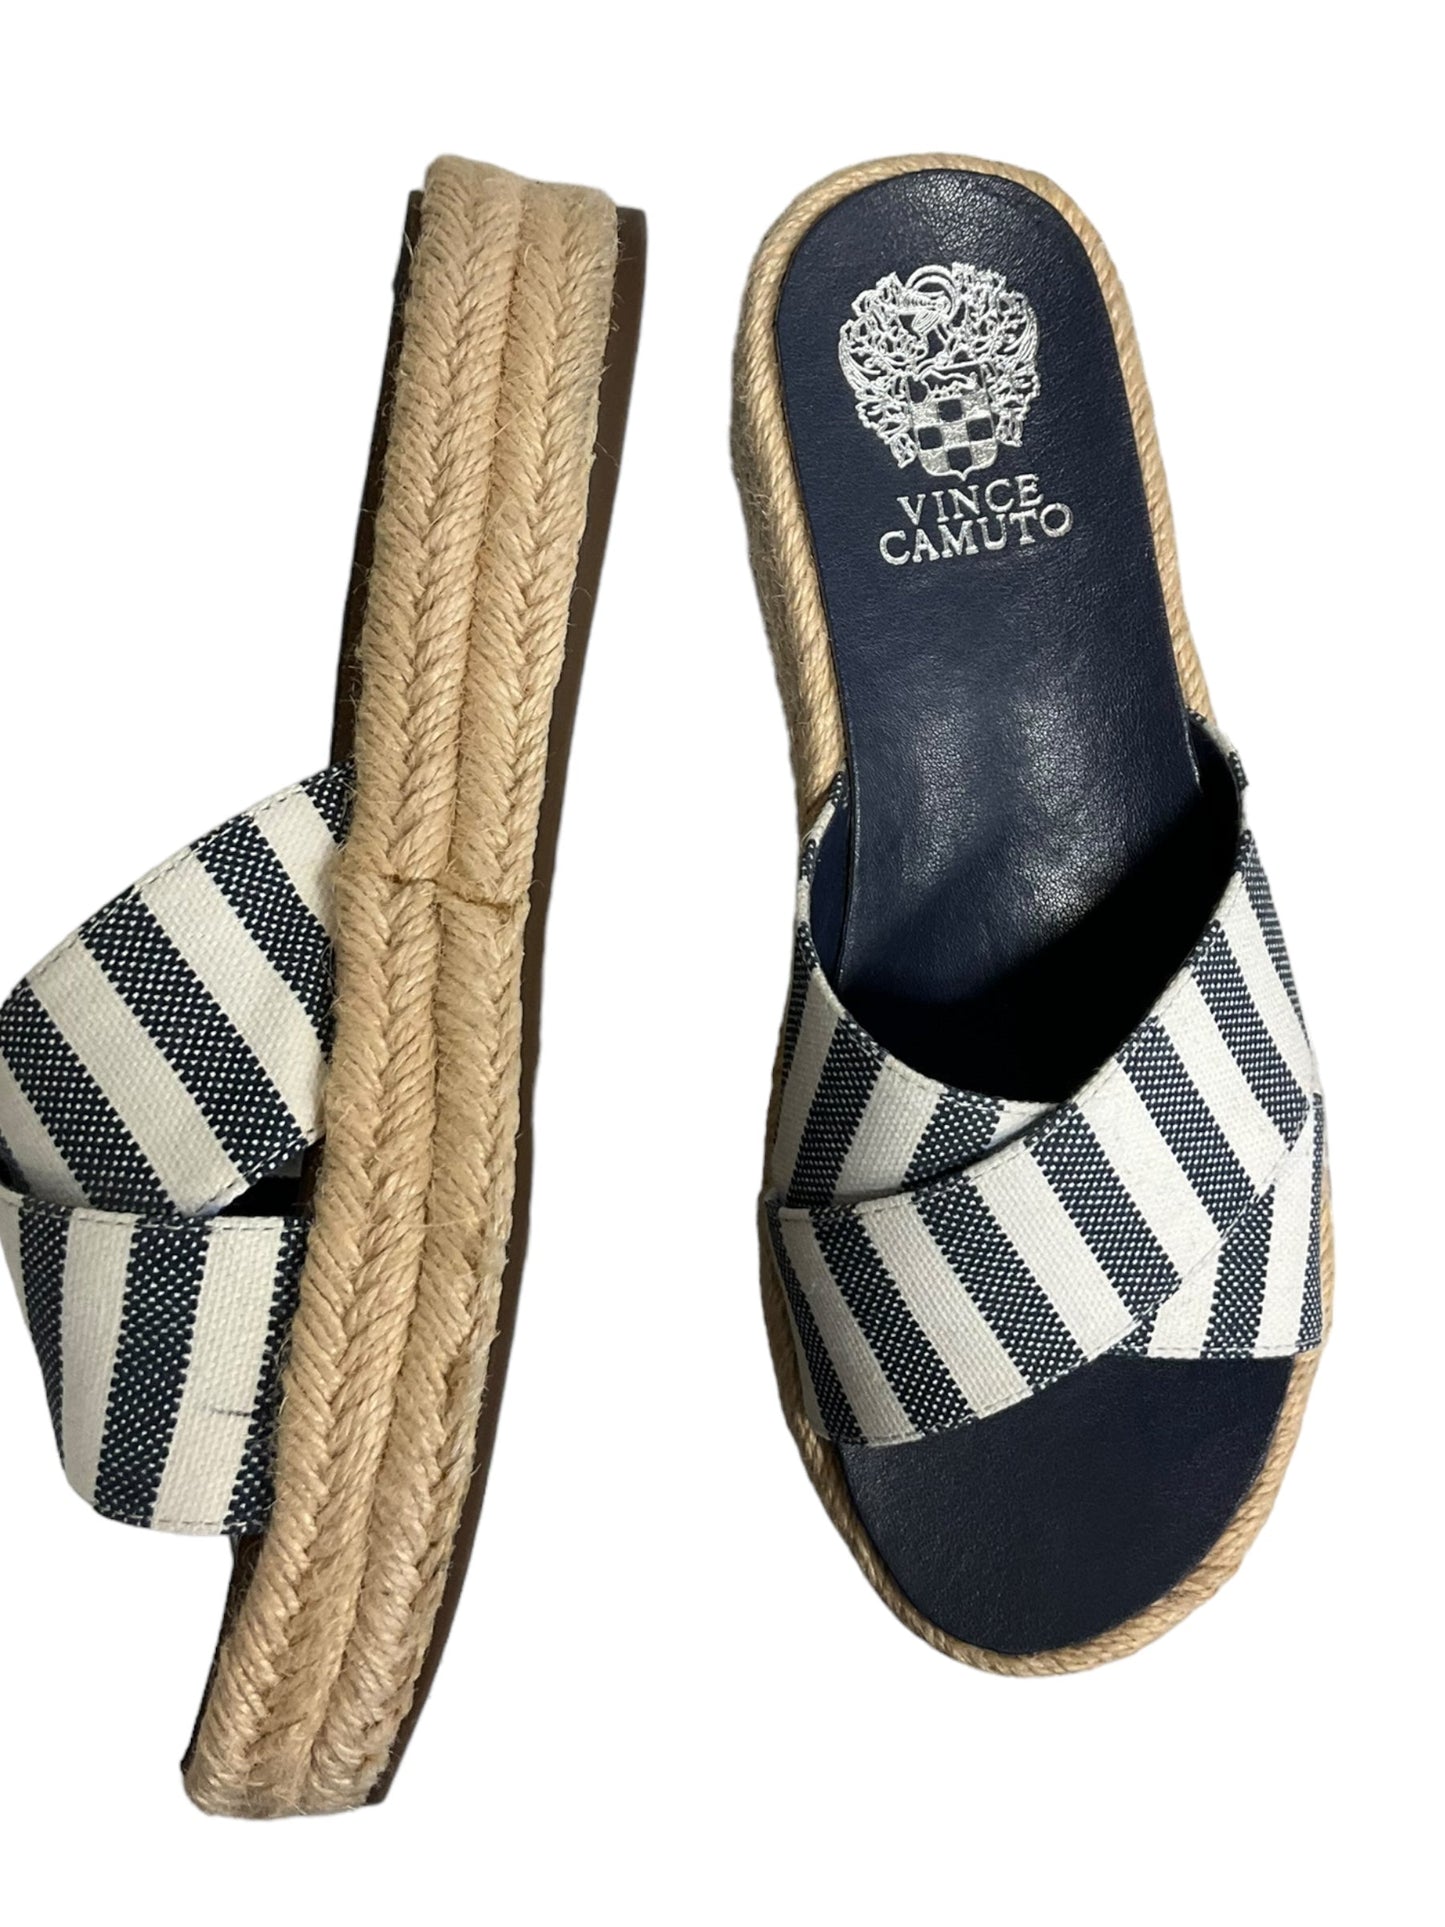 Striped Pattern Sandals Heels Platform Vince Camuto, Size 6.5